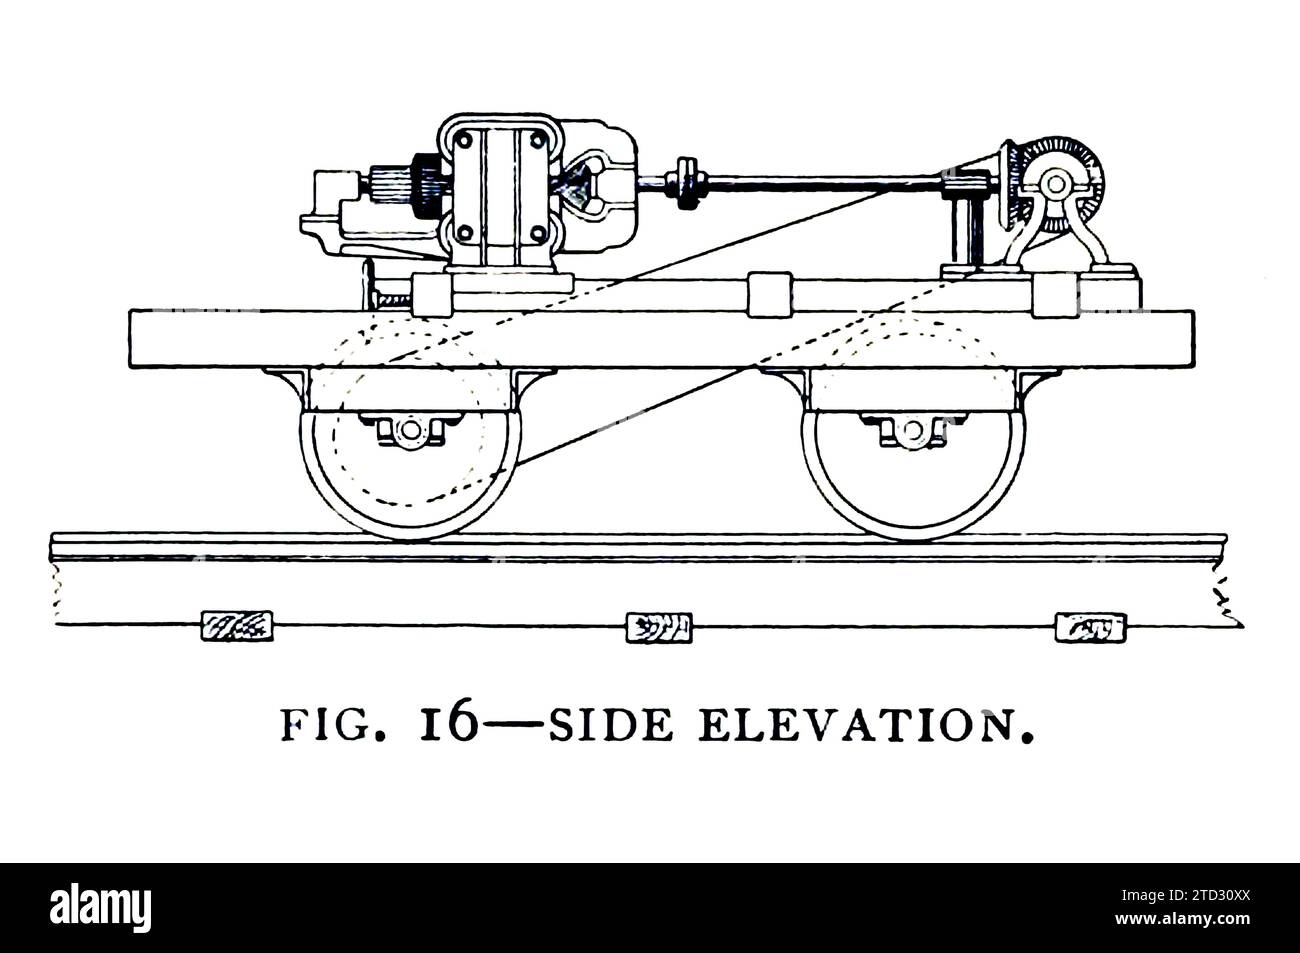 Illustrazione di un'elevazione laterale di "The Judge", che operò a Chicago, negli Stati Uniti, nel 1883. Da "Development of the Electric Locomotive" di B J Arnold, da The Engineering Magazine, volume VII, 1894. Foto Stock